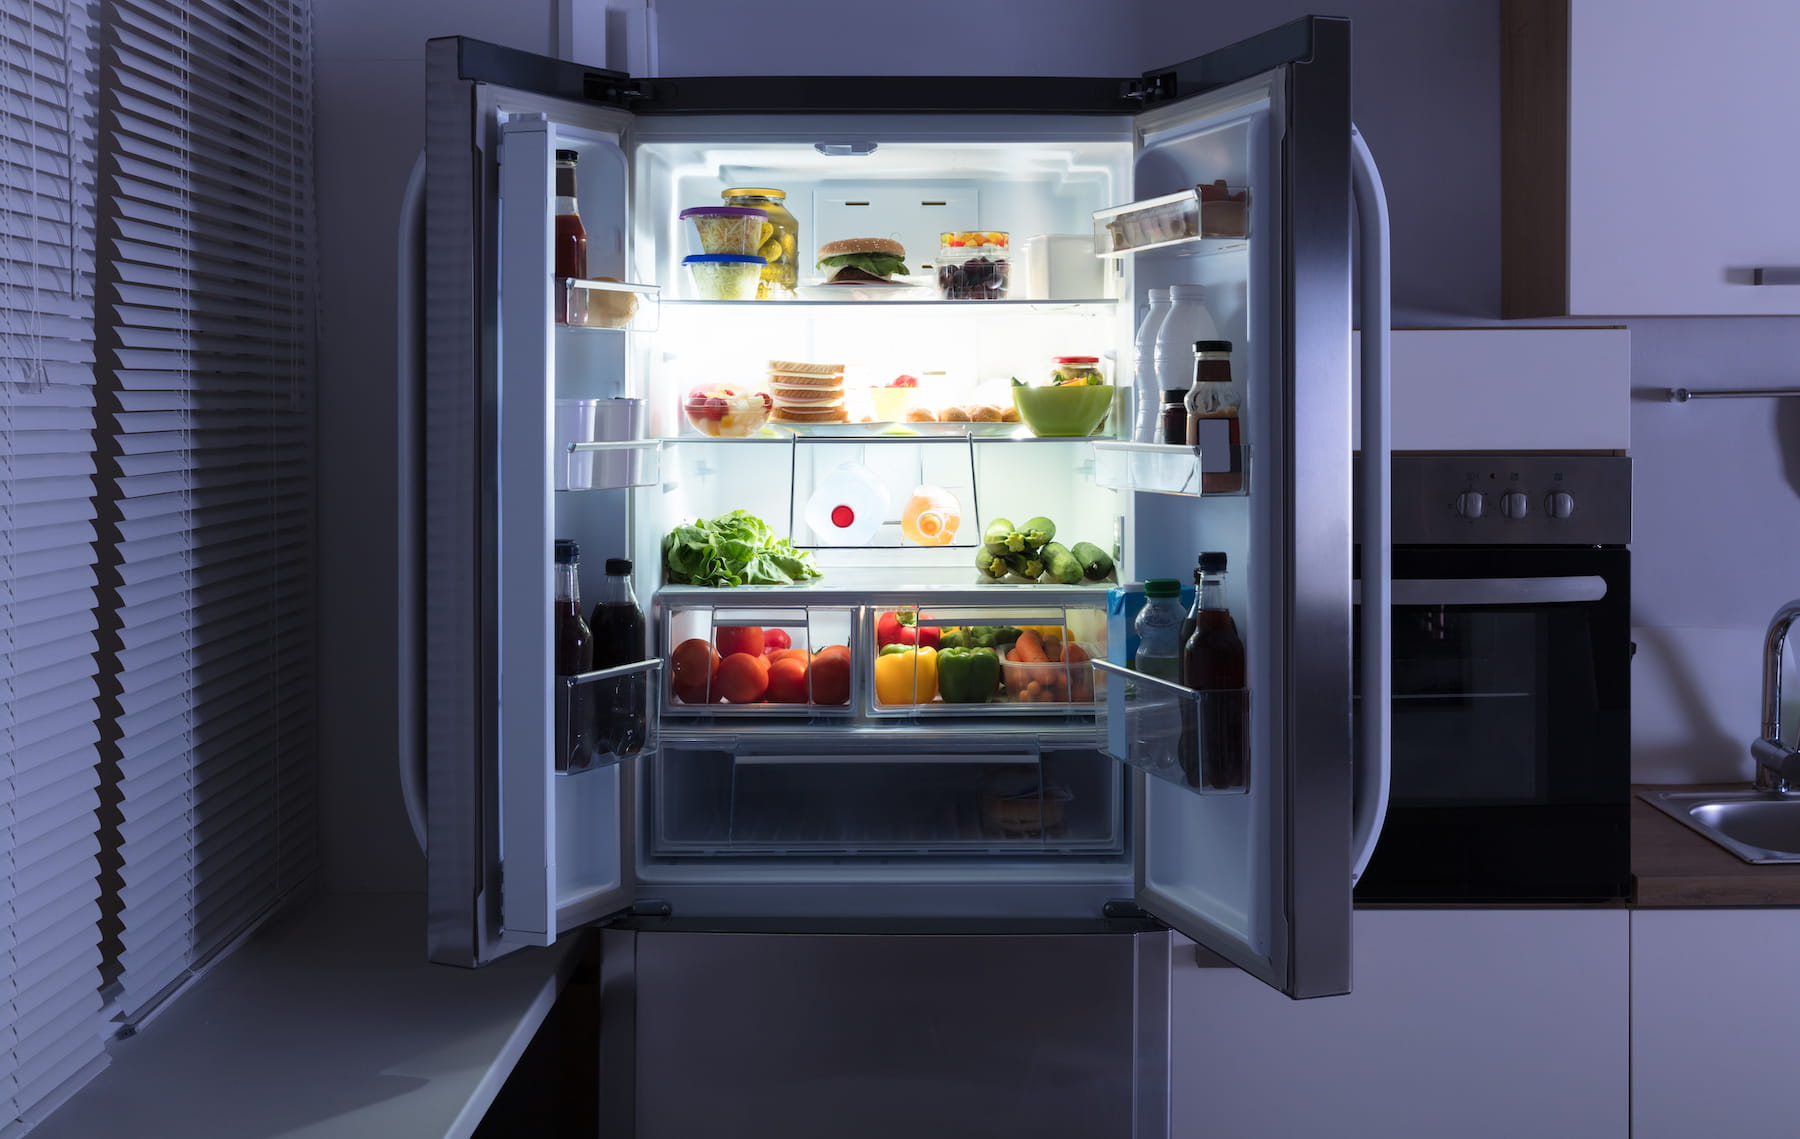 Smart refrigerator with open doors